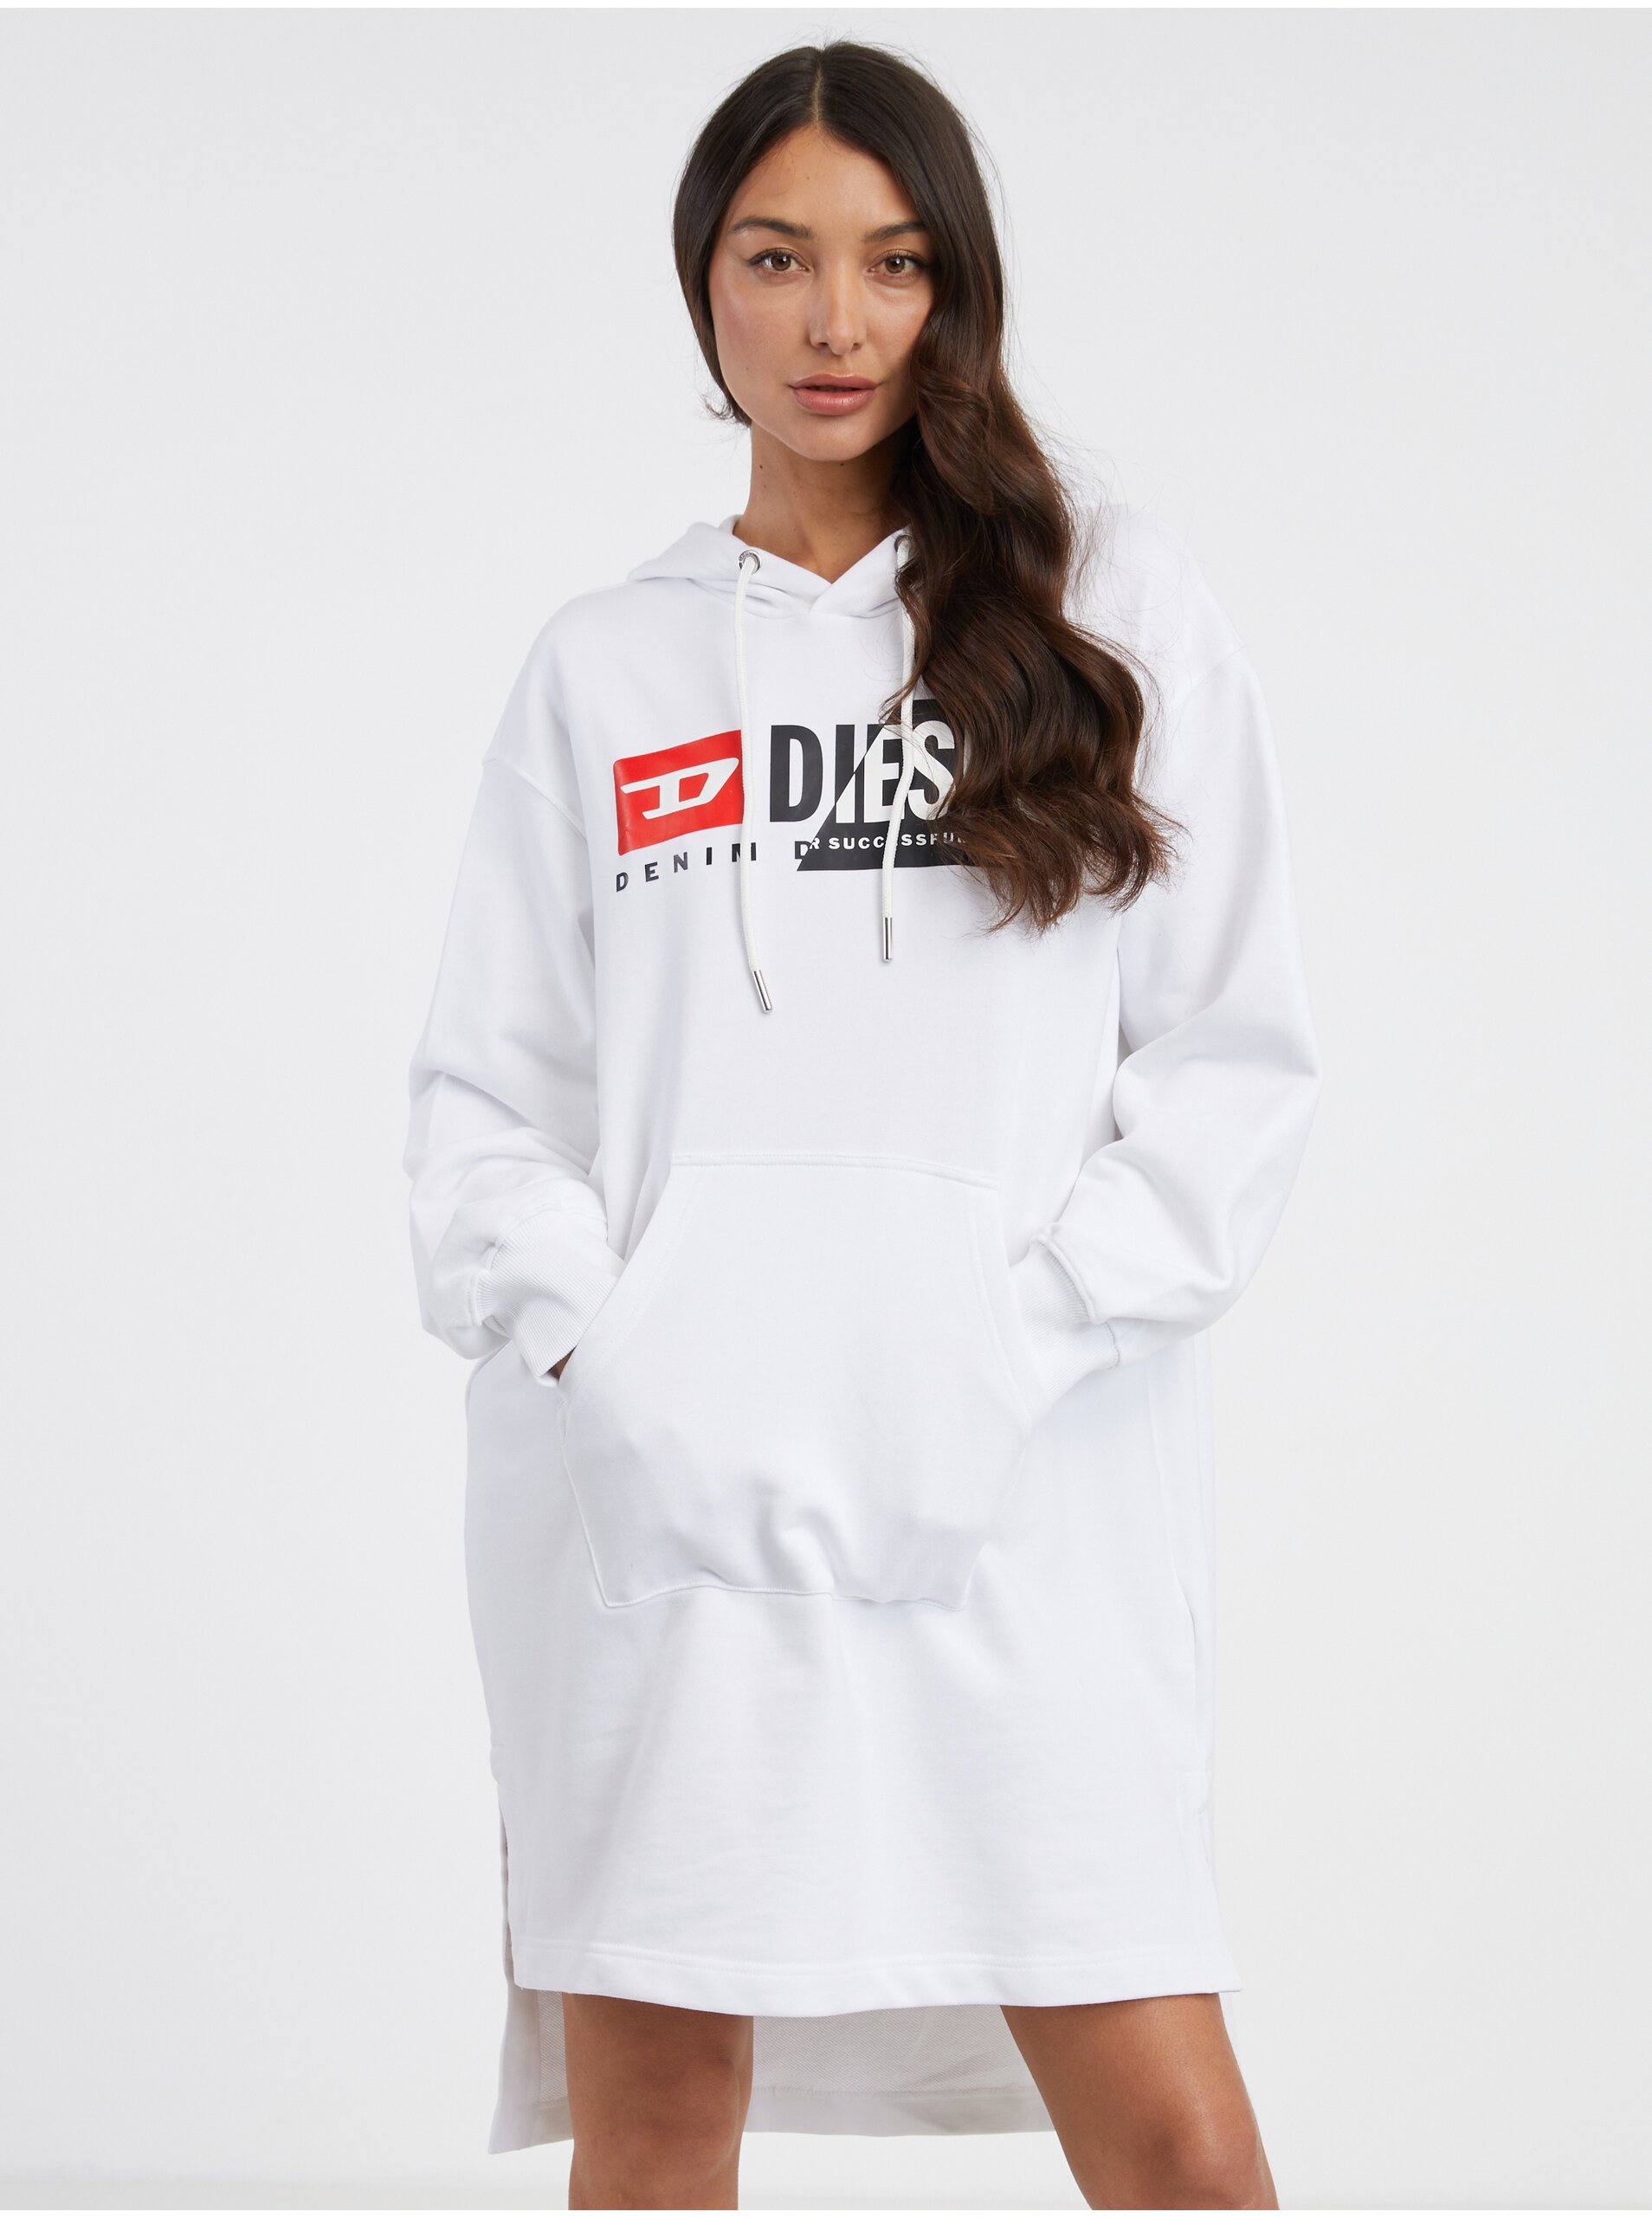 White women's sweatshirt dress Diesel Ilse - Women